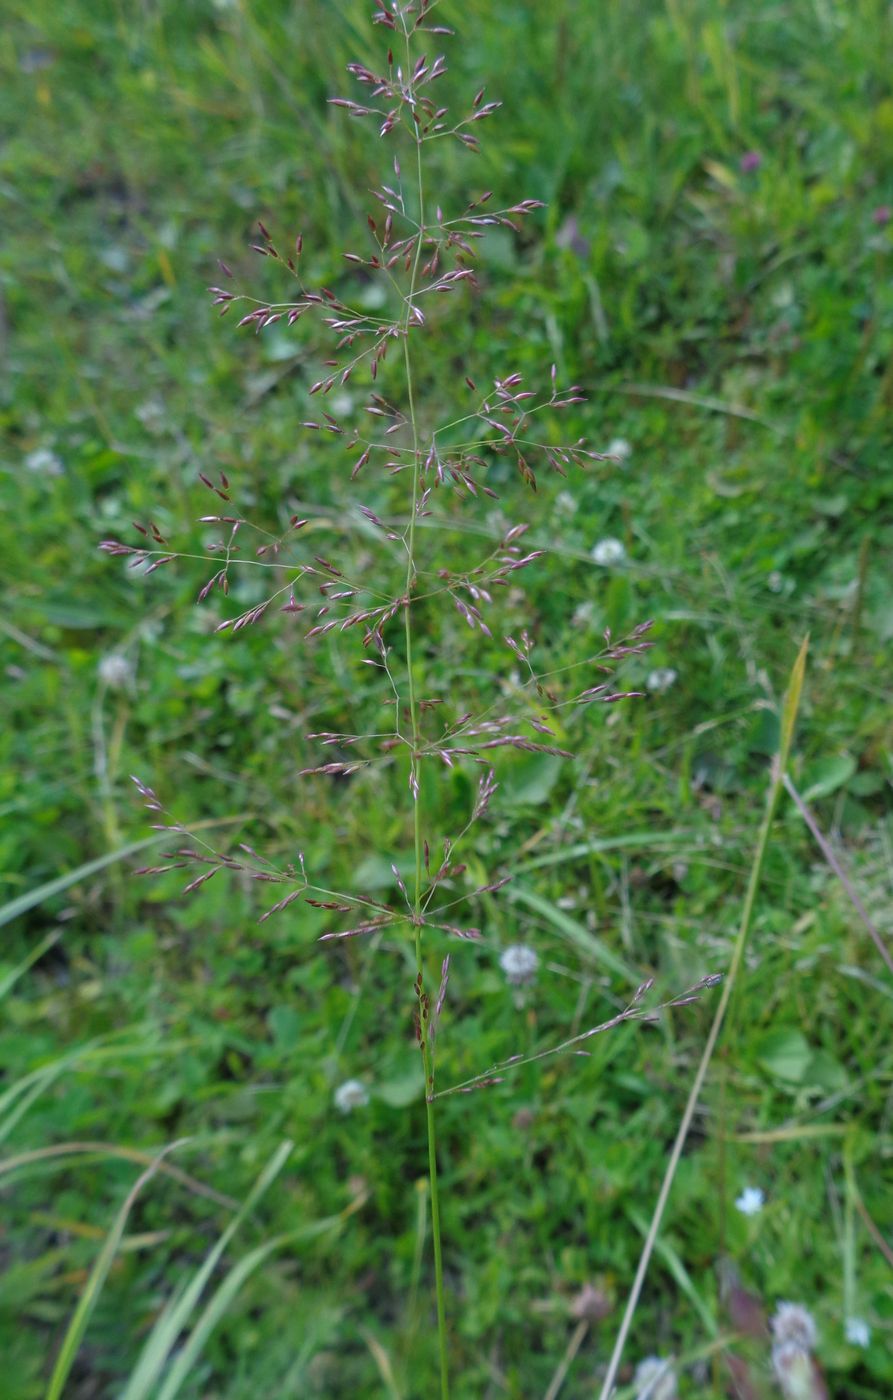 Image of genus Agrostis specimen.